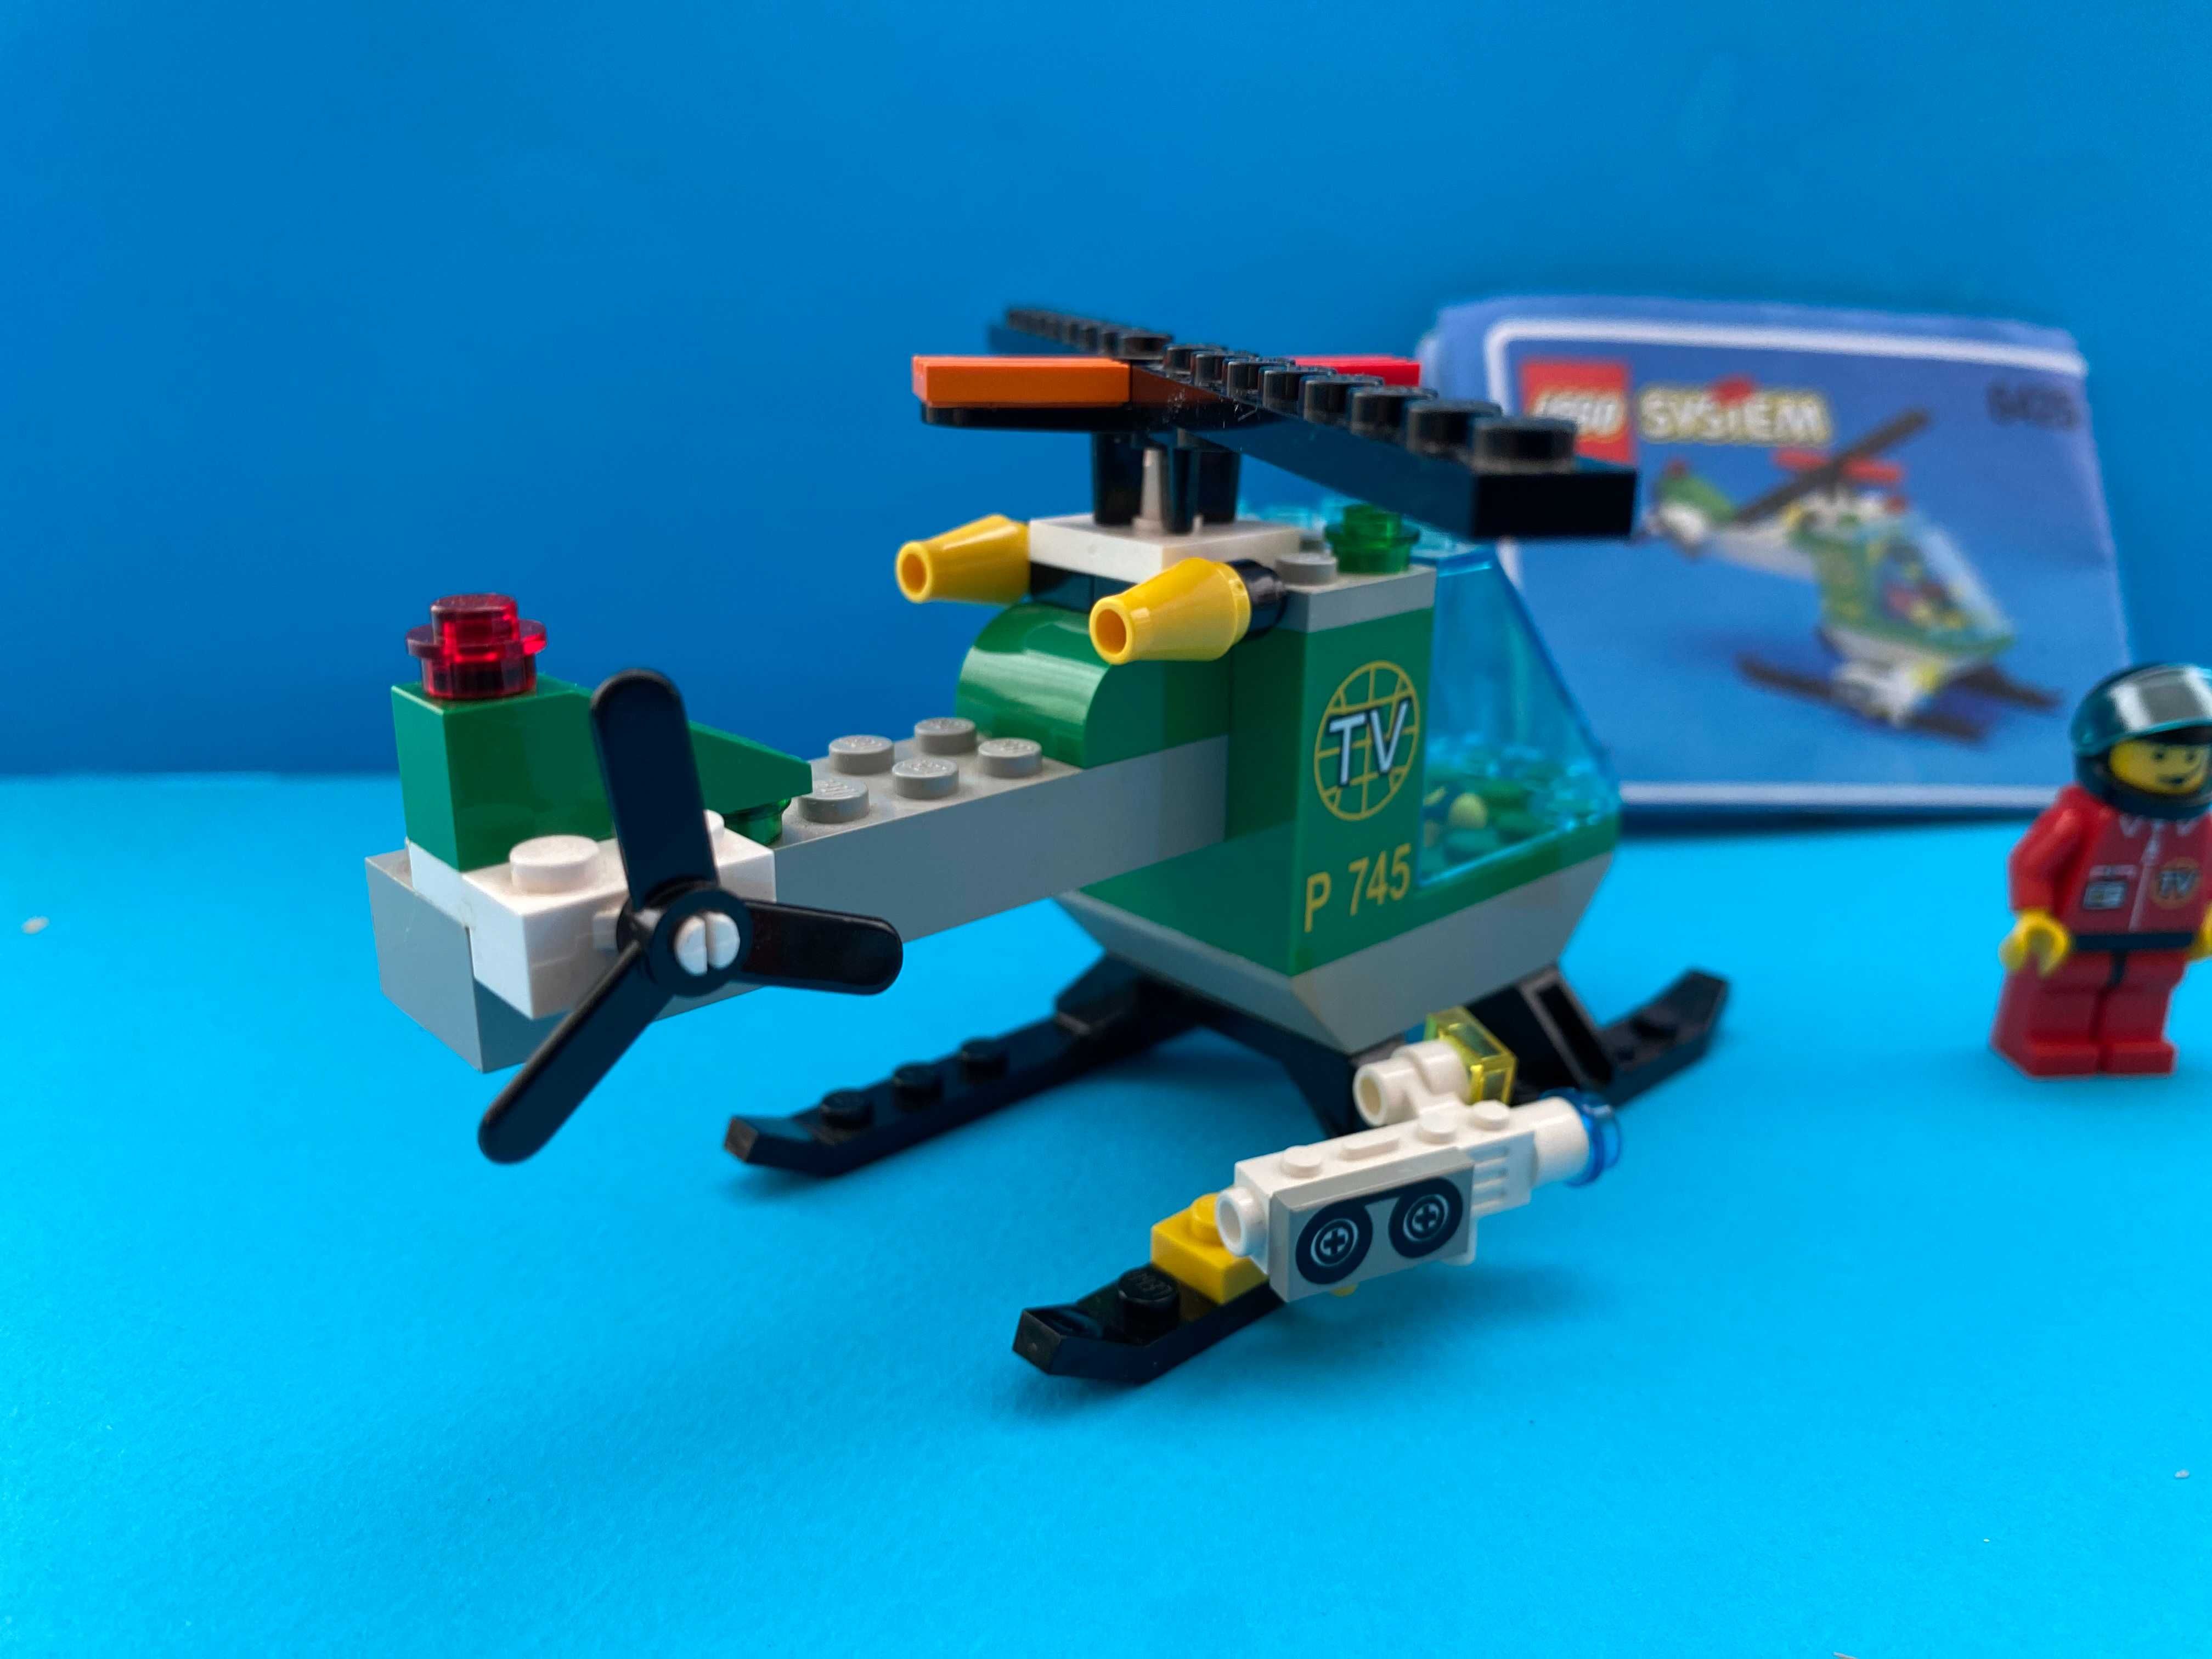 Lego Classic Town 6341 и 6425 Ретро Модели